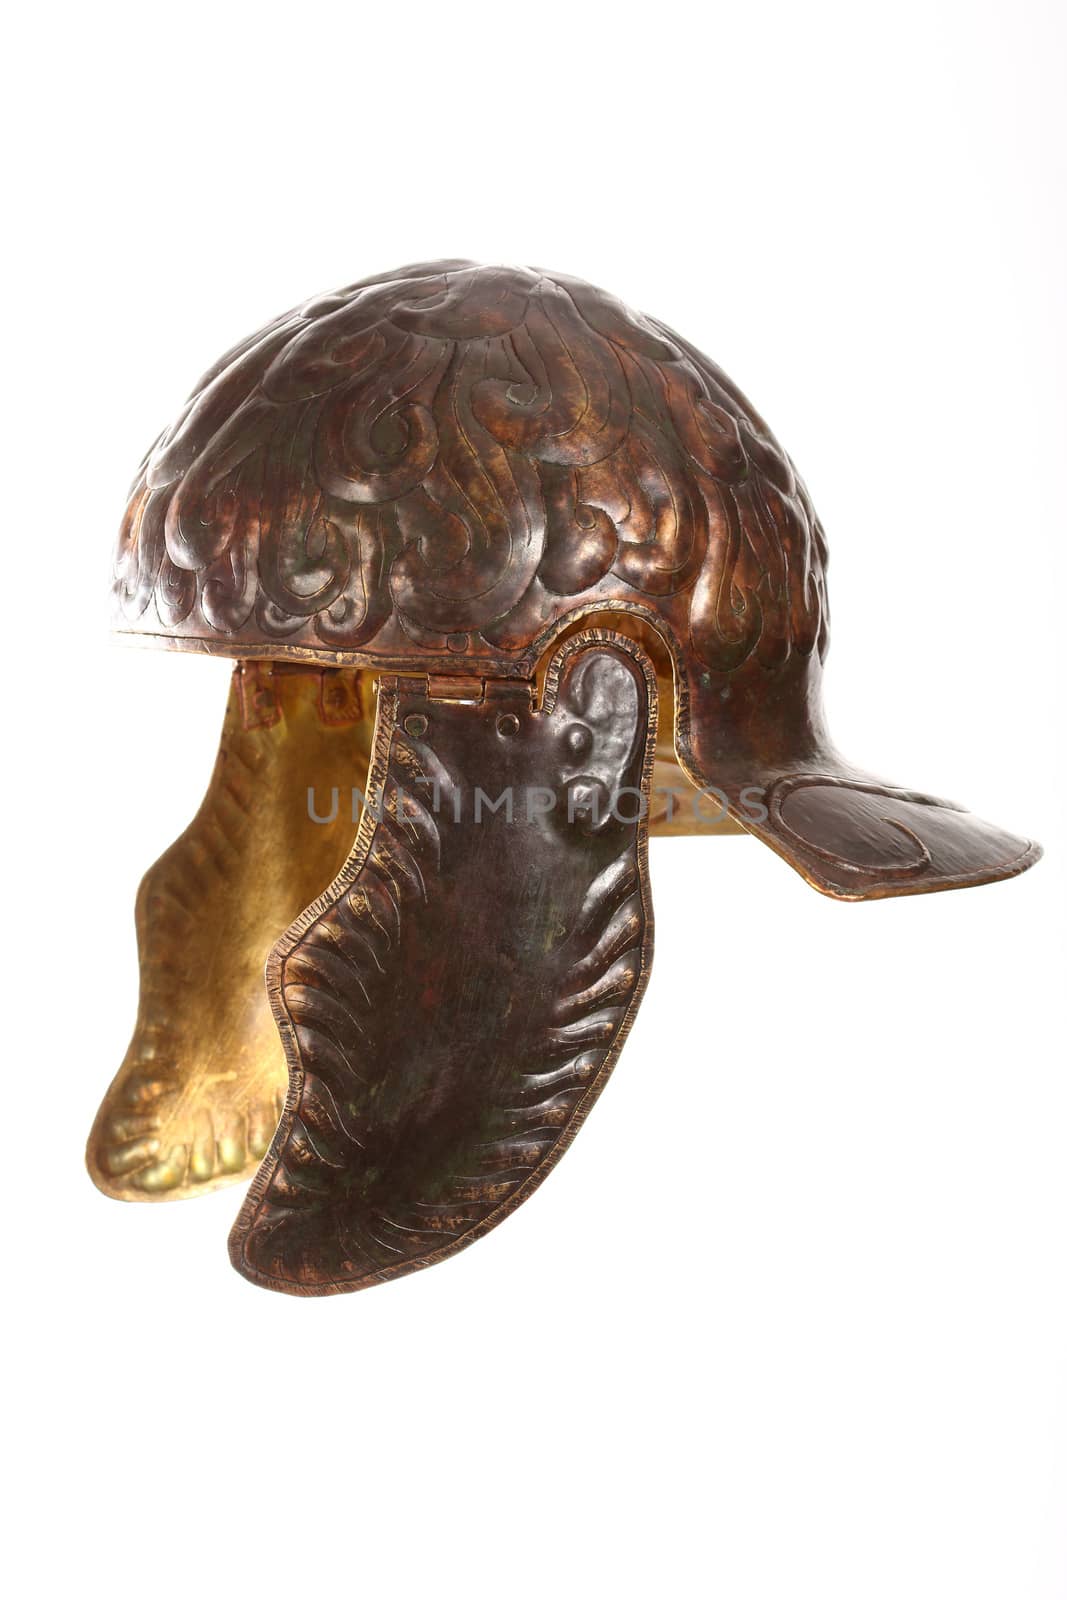 ancient bronze roman helmet over white